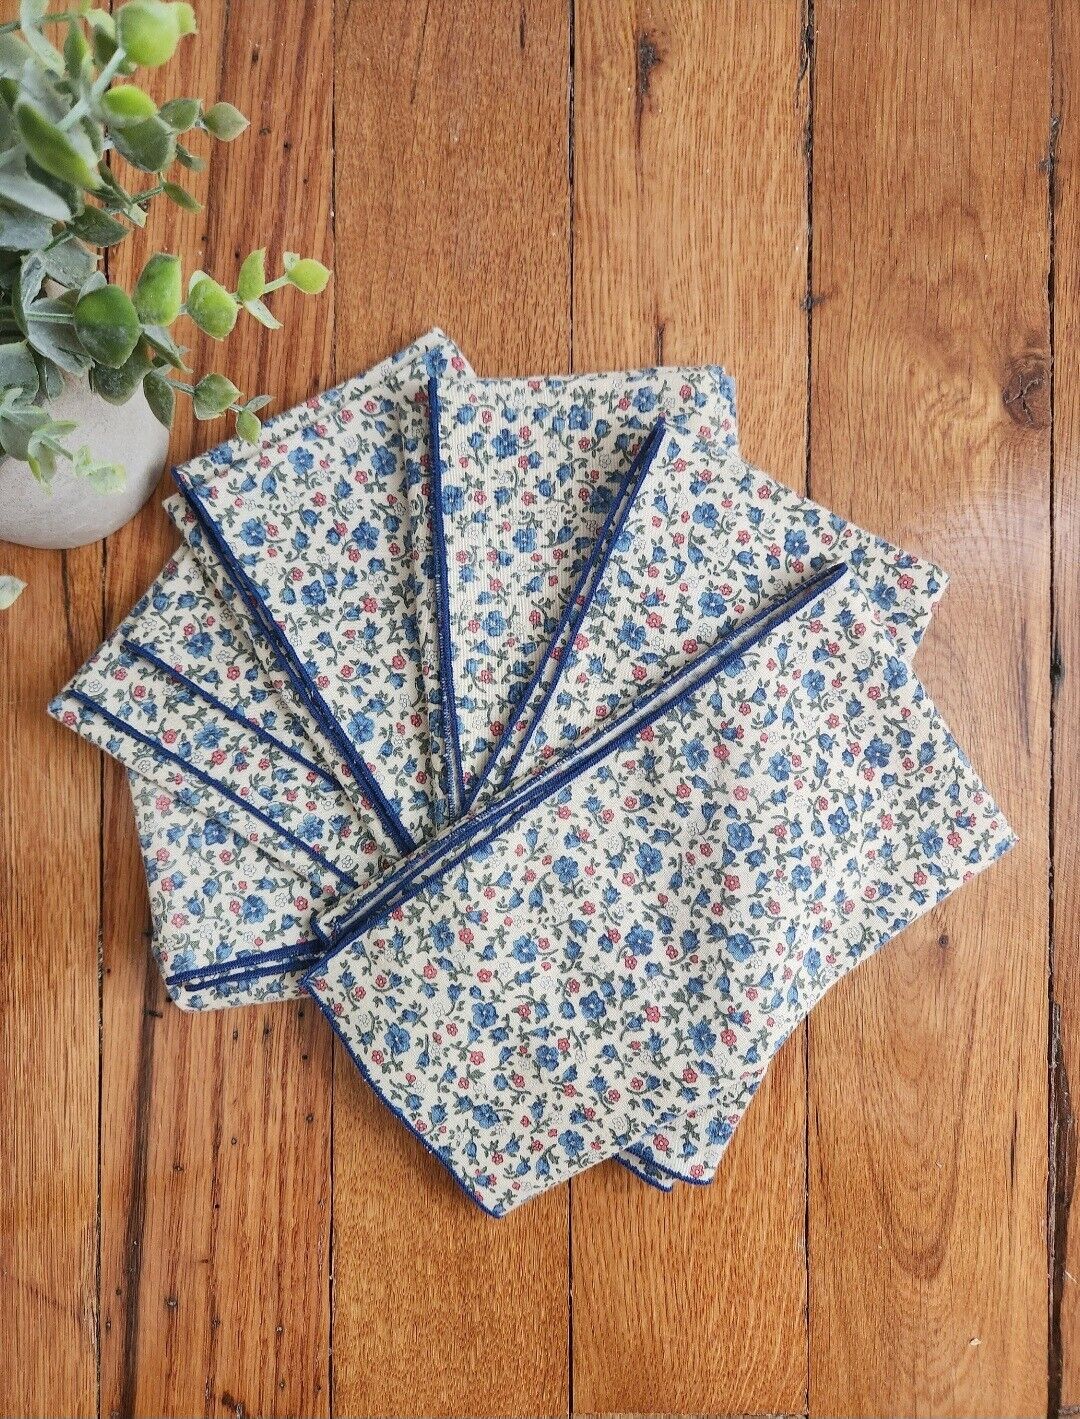 Blue Floral Vintage Linen Napkins - Set of Six (6) - Cottagecore - Farmhouse...